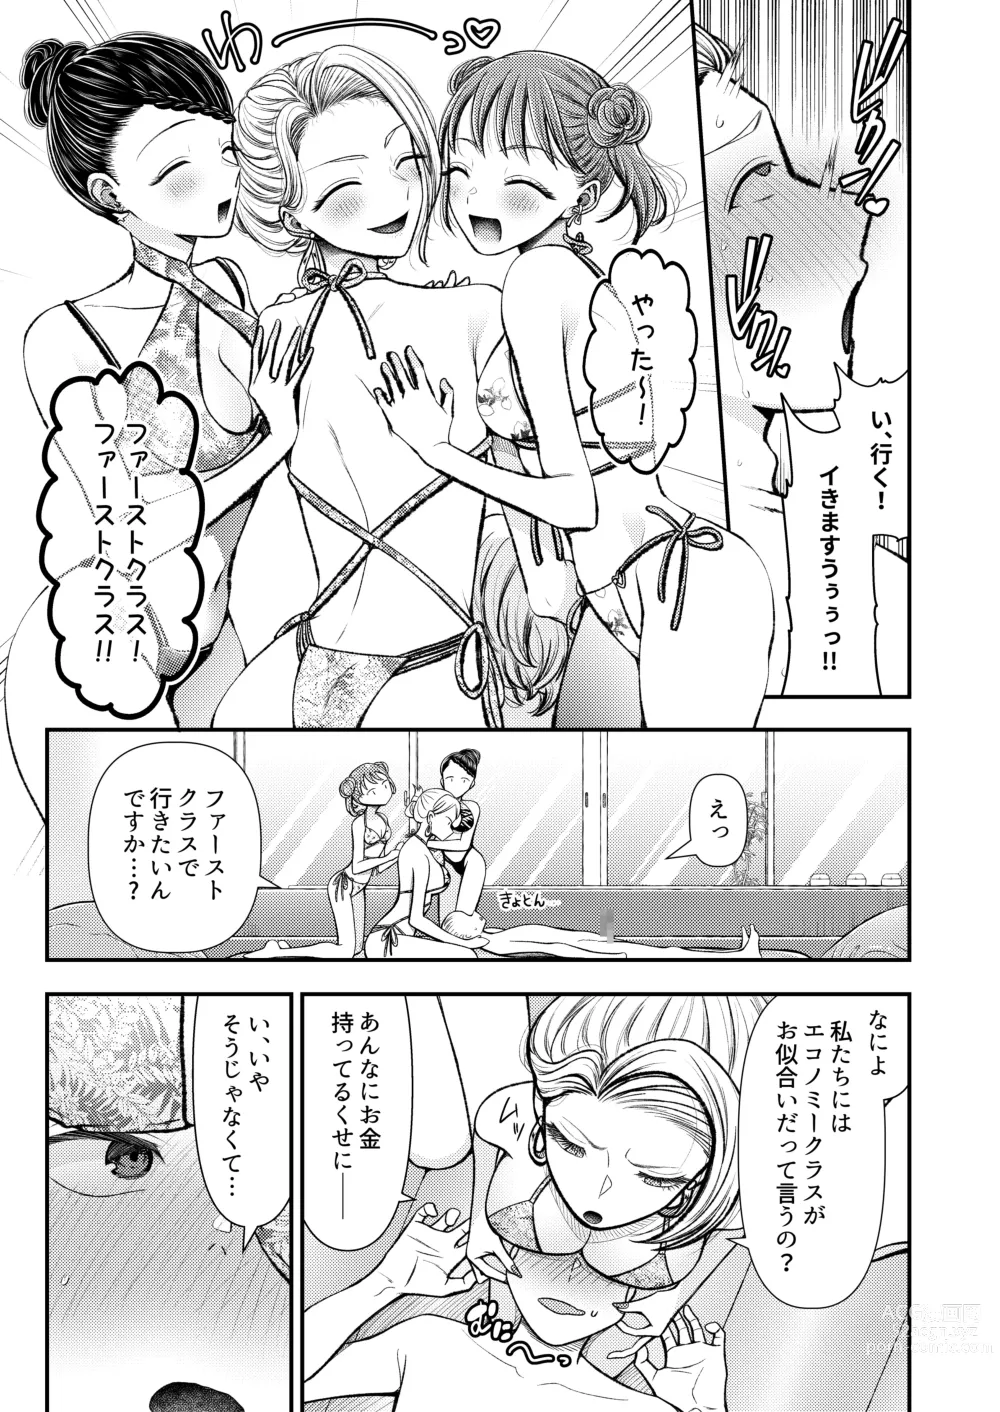 Page 8 of doujinshi M-o Muke Zasshifuu Doujinshi Dokutoku no Magazine Vol. 8